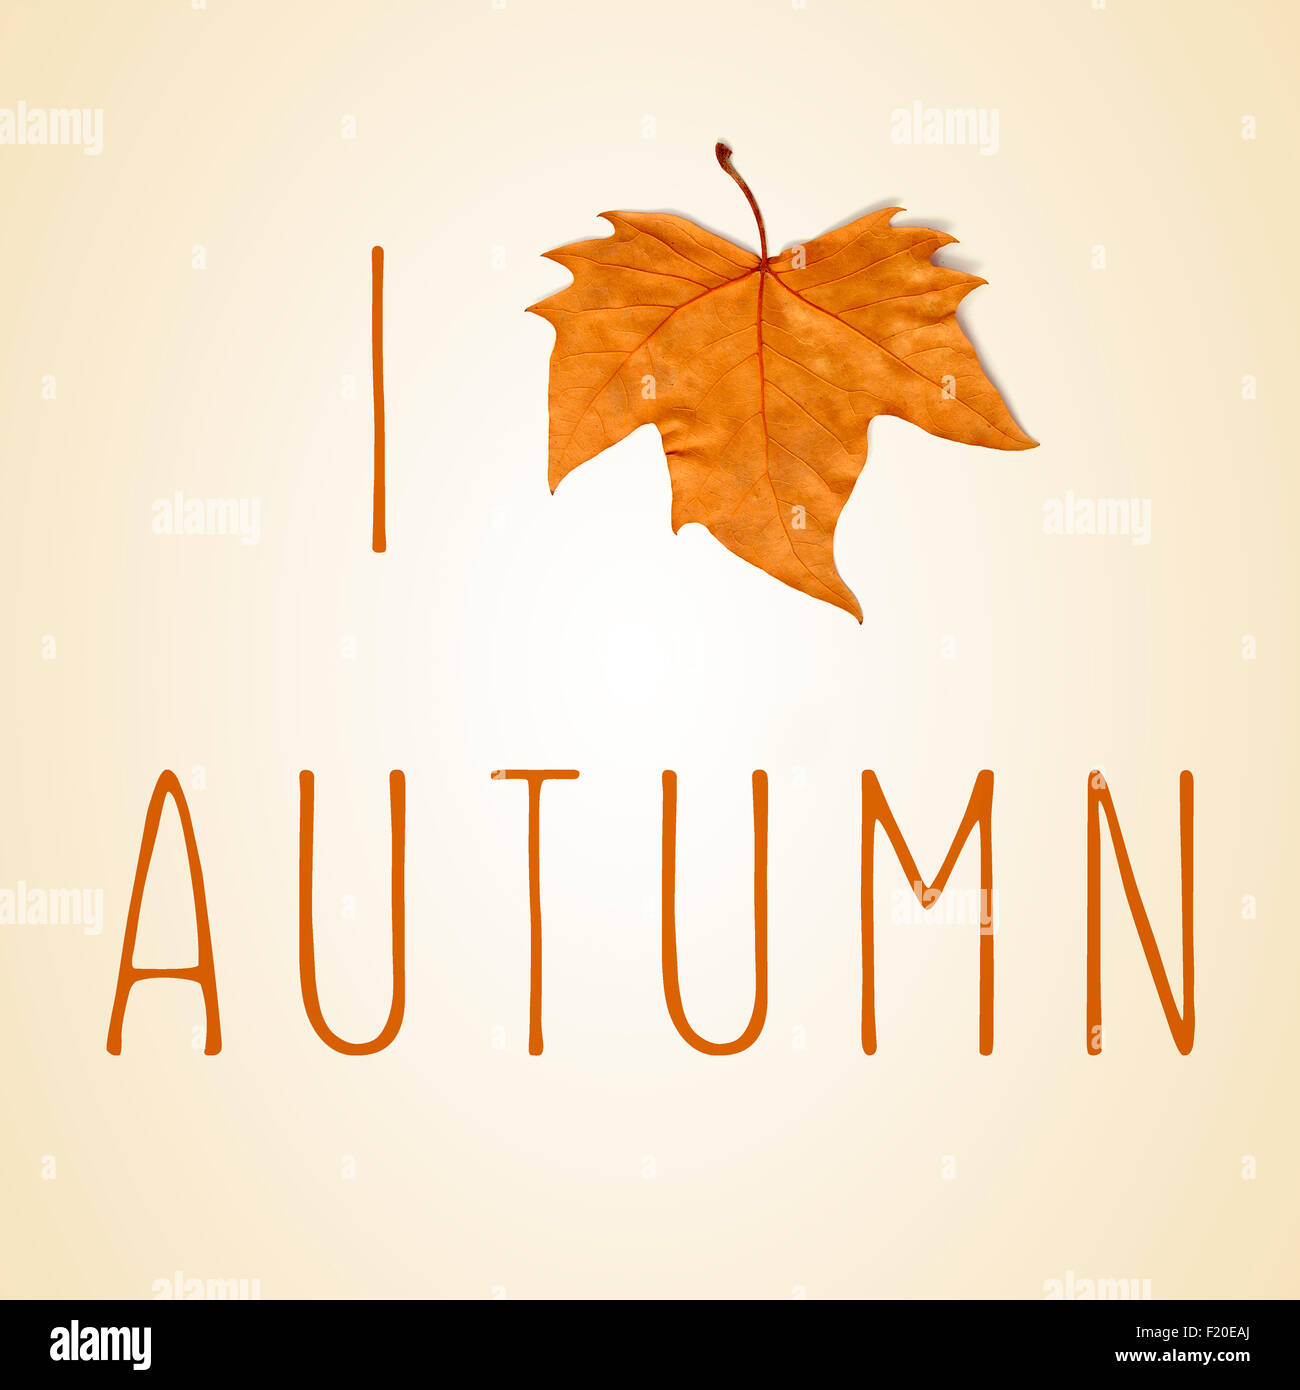 der Satz ich liebe Herbst mit ein welkes Blatt anstelle eines Herzens auf einem beigen Hintergrund Stockfoto